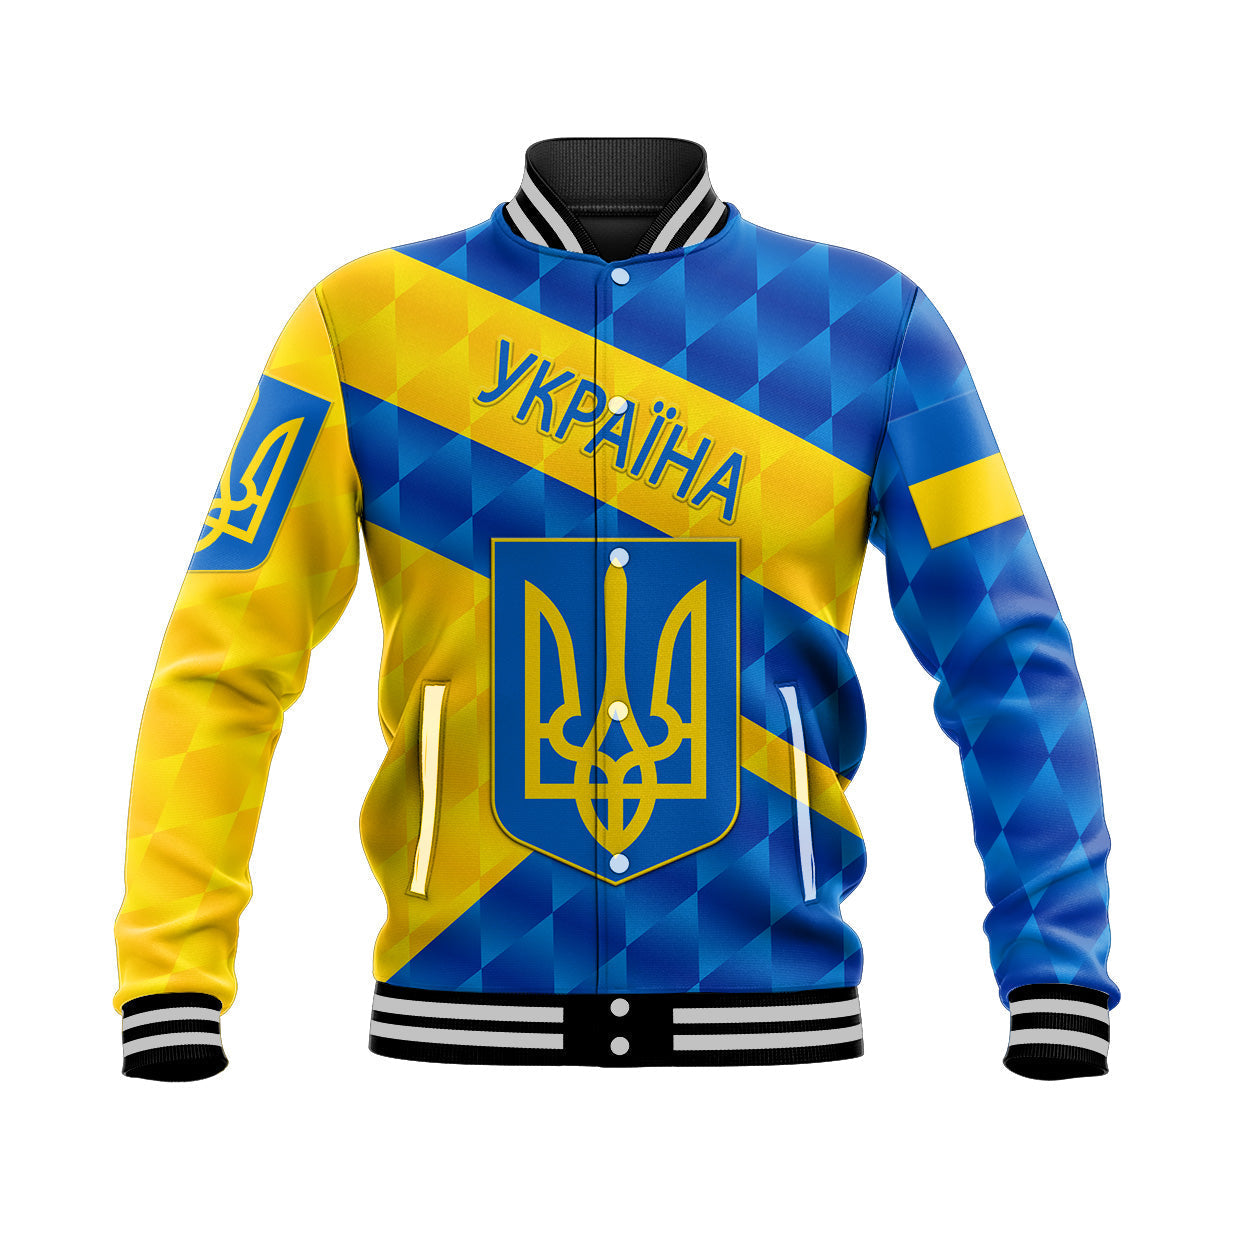 ukraine-baseball-jacket-sporty-style